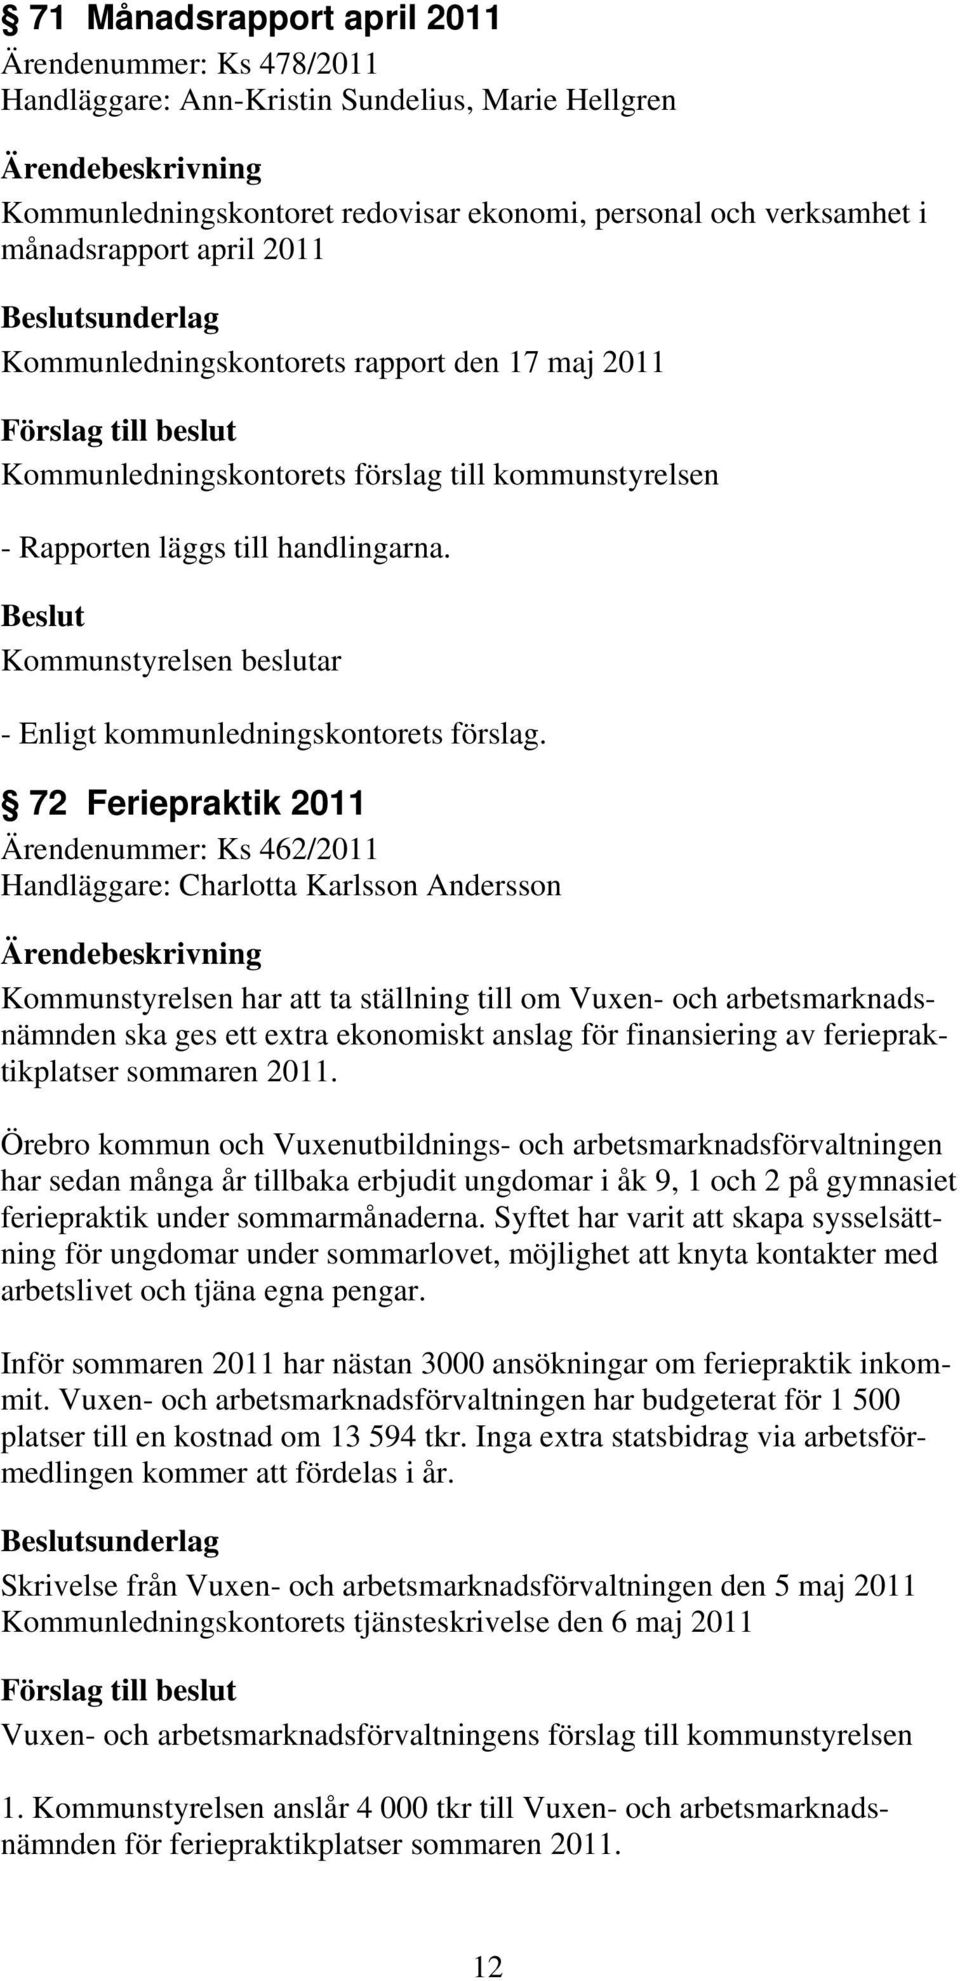 72 Feriepraktik 2011 Ärendenummer: Ks 462/2011 Handläggare: Charlotta Karlsson Andersson Kommunstyrelsen har att ta ställning till om Vuxen- och arbetsmarknadsnämnden ska ges ett extra ekonomiskt